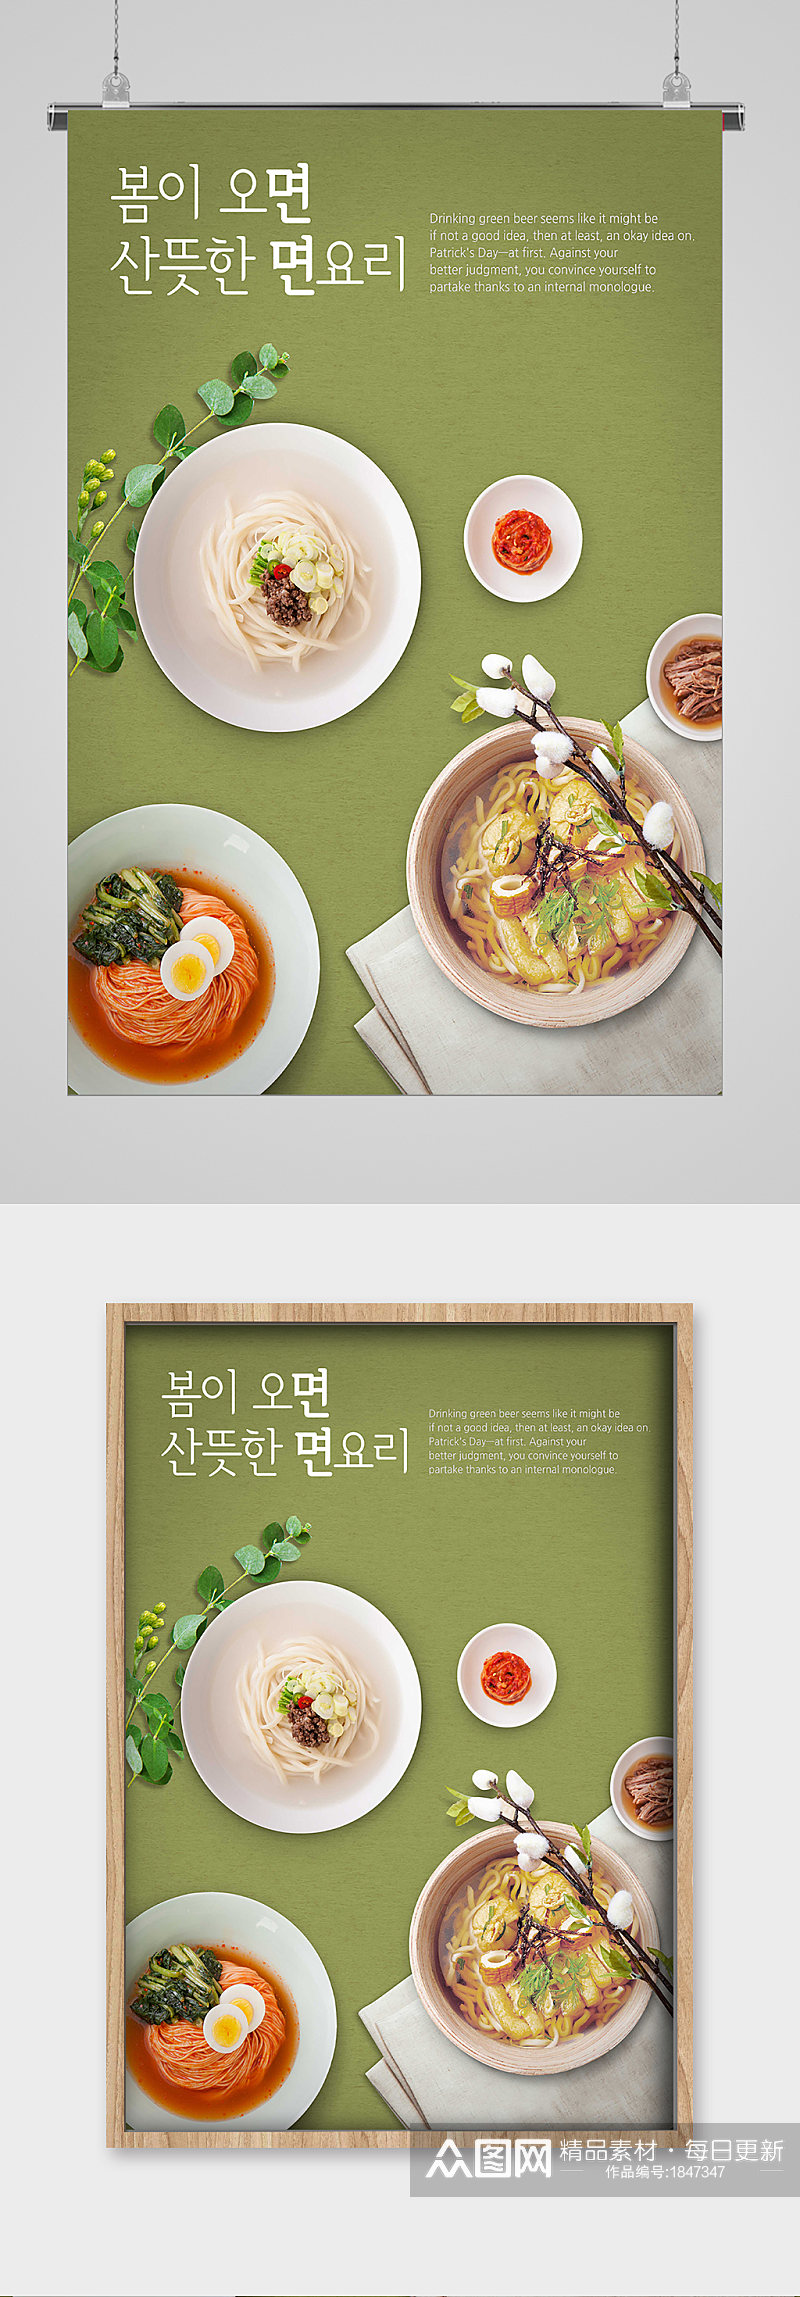 韩式餐饮美食宣传海报素材